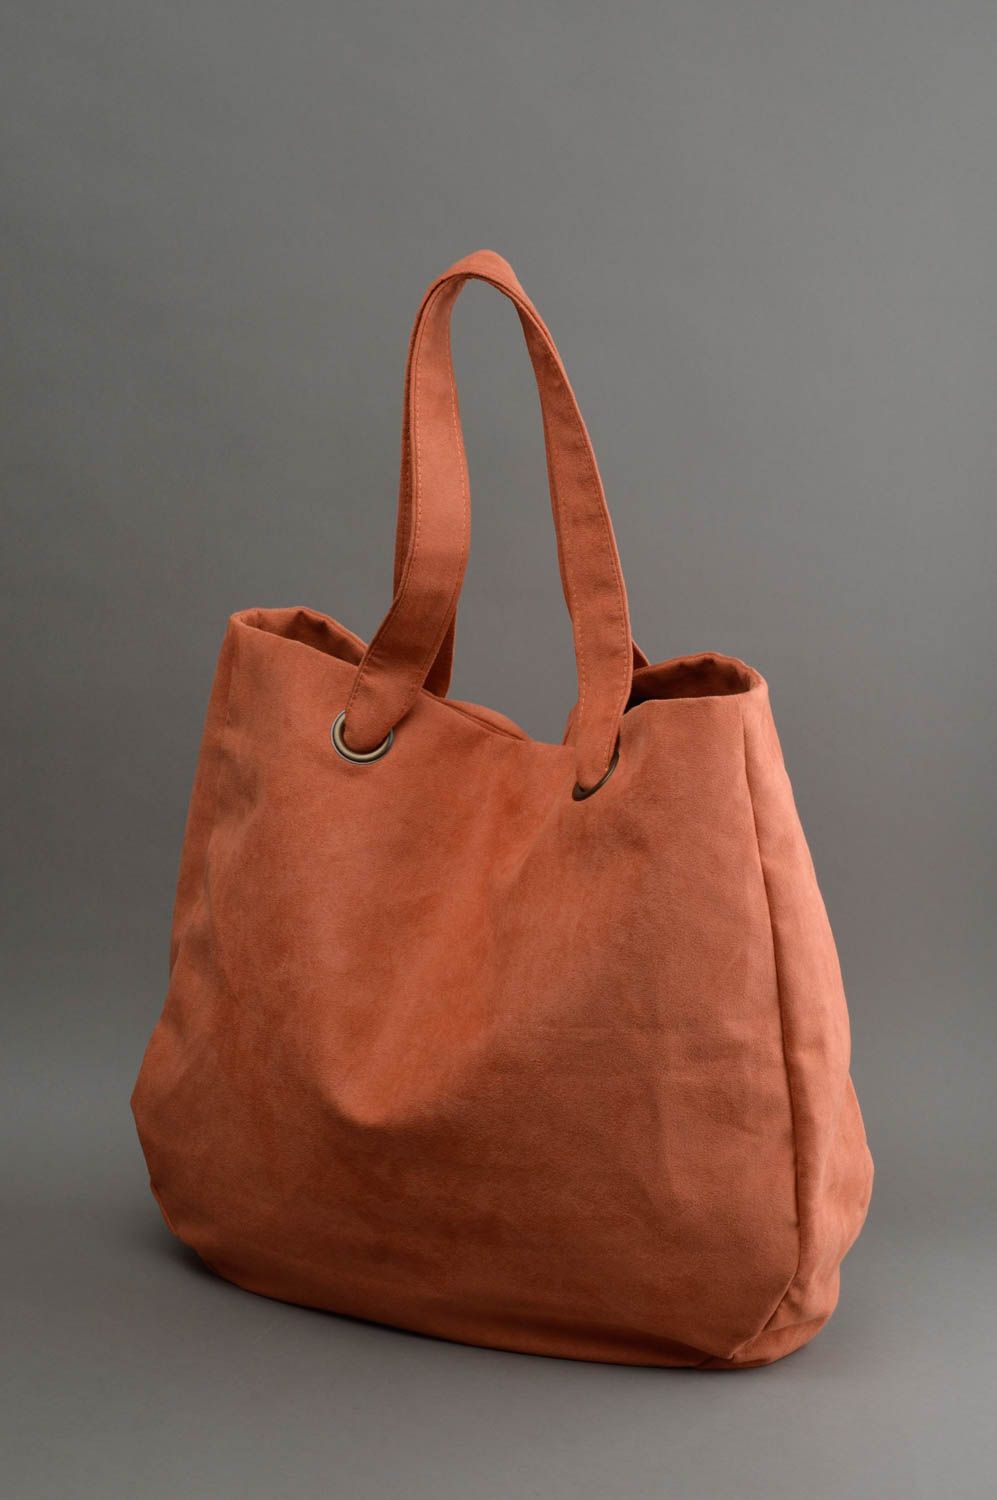 Grand sac marron porté épaule en daim artificiel fait main avec poche intérieure photo 2